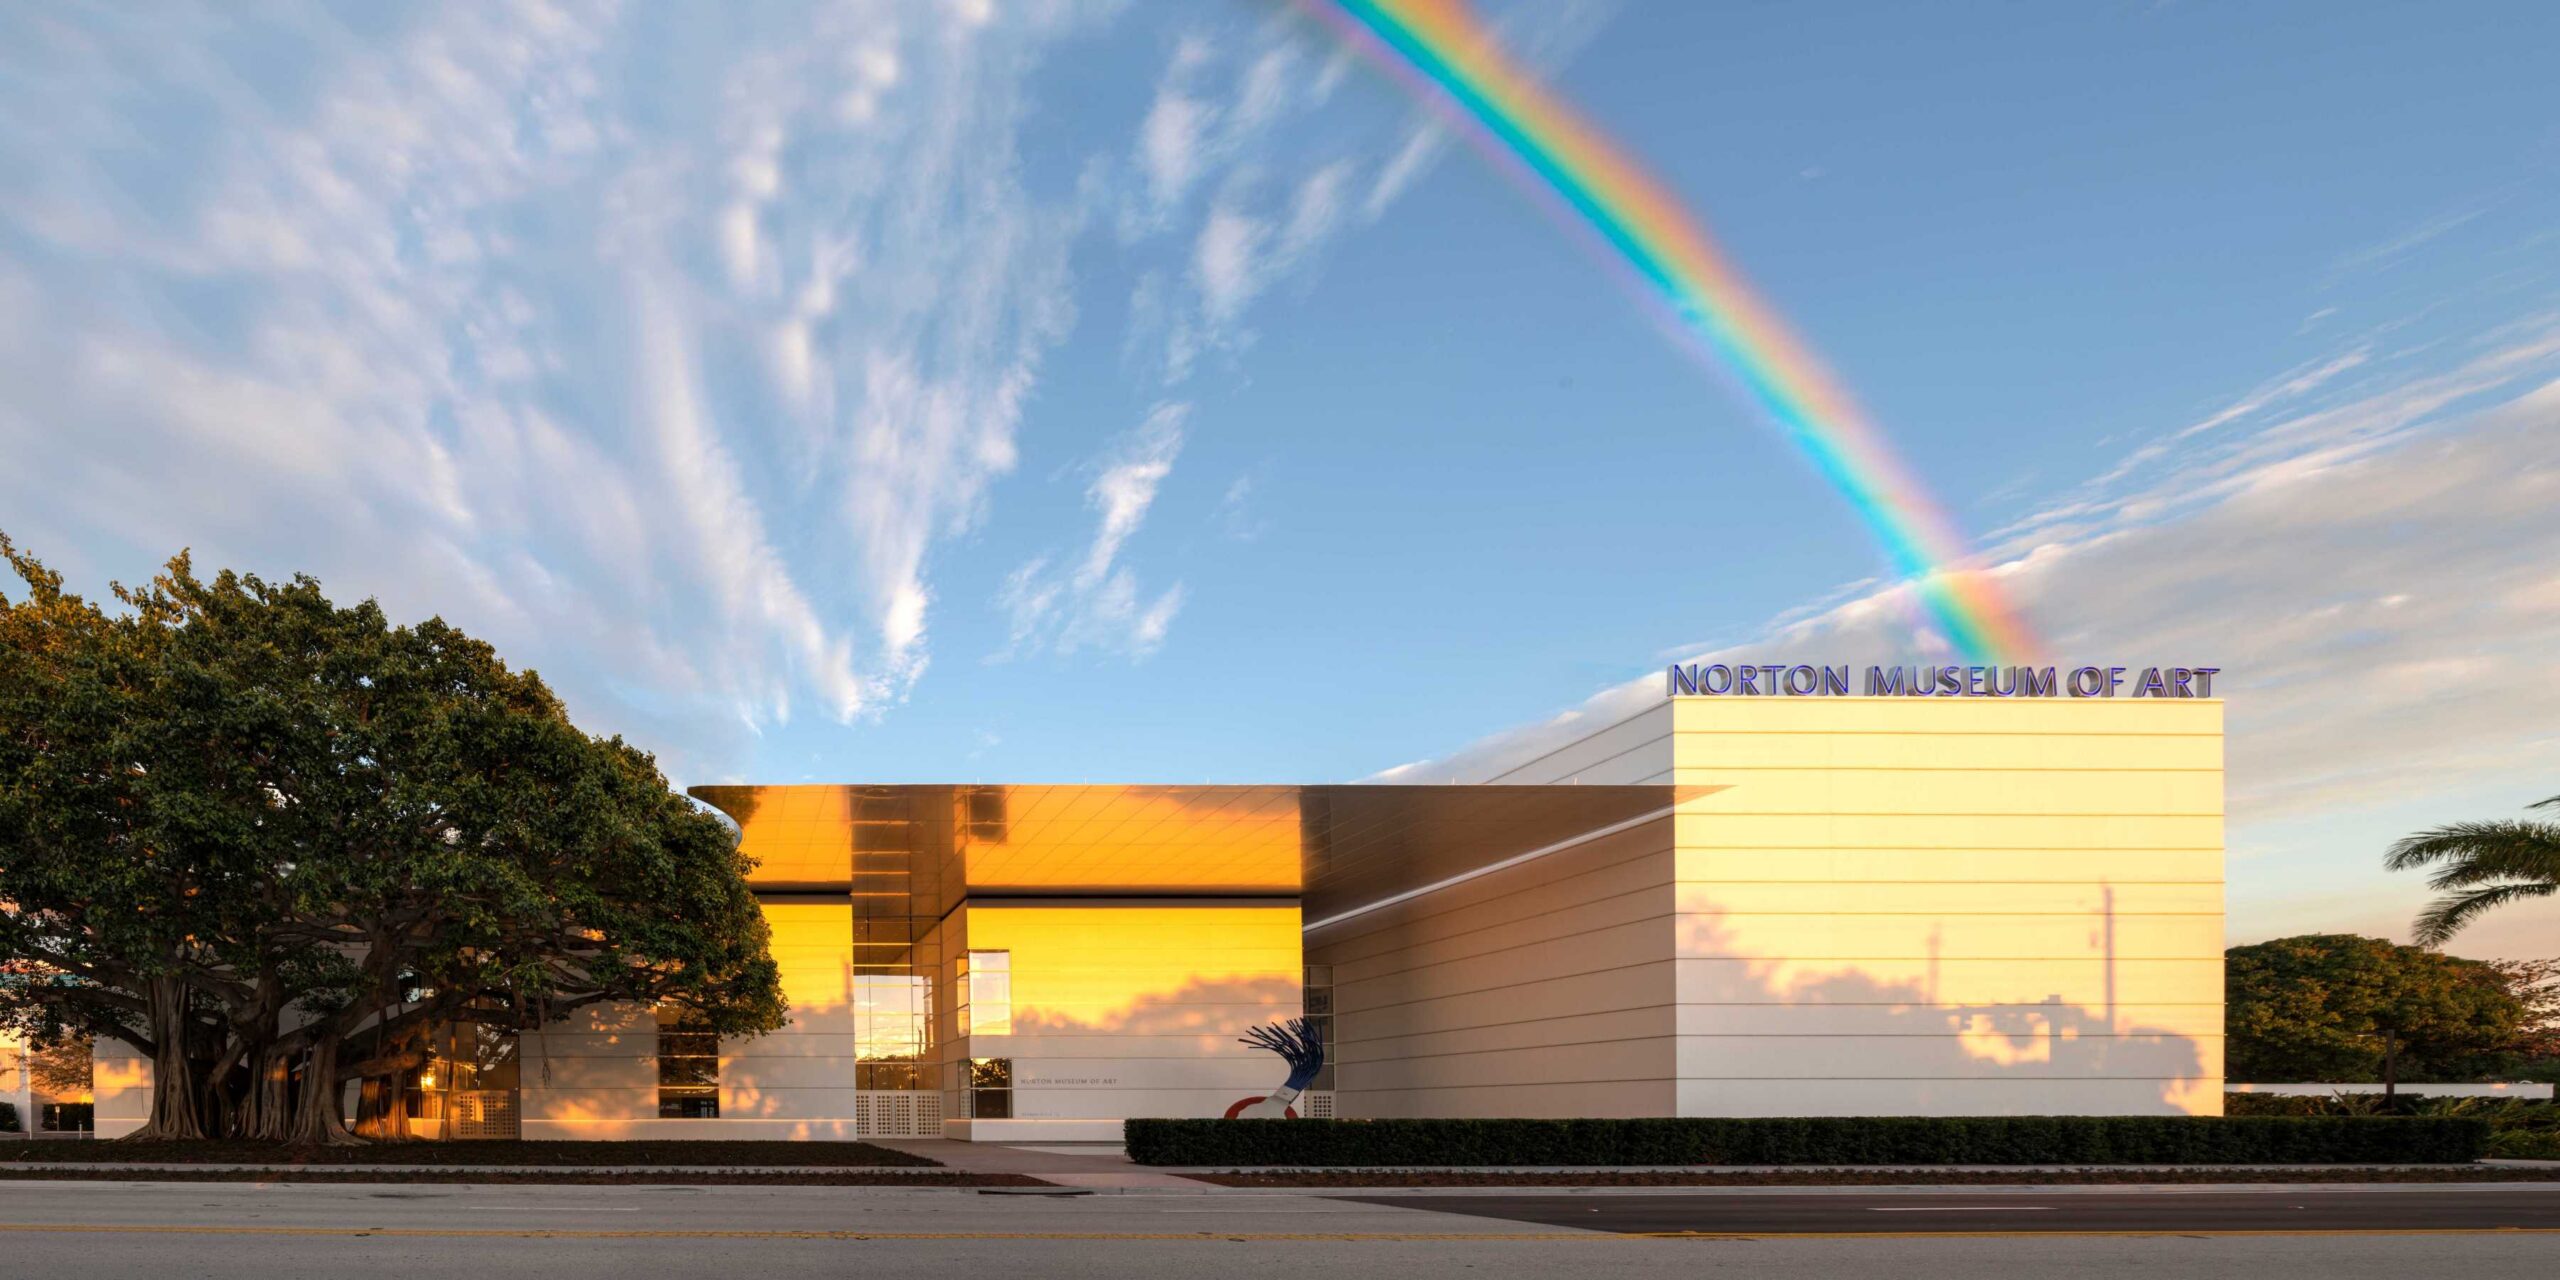 Norton Museum of Art